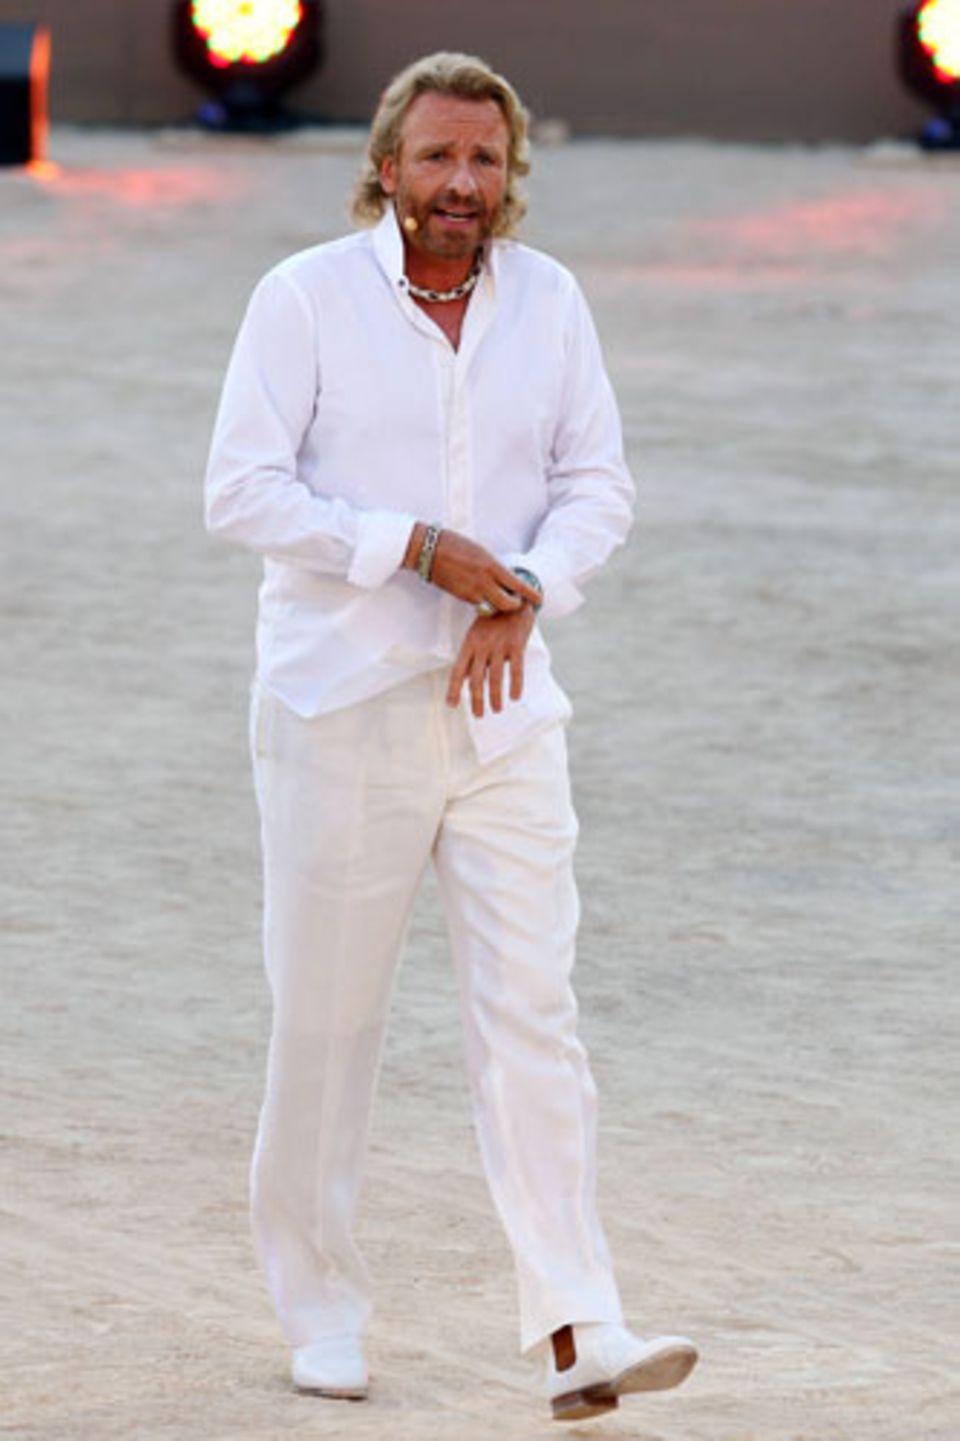 Wir fragen uns, welche Inspiration wohl hinter diesem sommerlichen Outfit von Thomas Gottschalk steckte. Wir tippen auf: "Miami Vice", Mafiosi auf Urlaub oder Düsseldorfer Zuhälter.